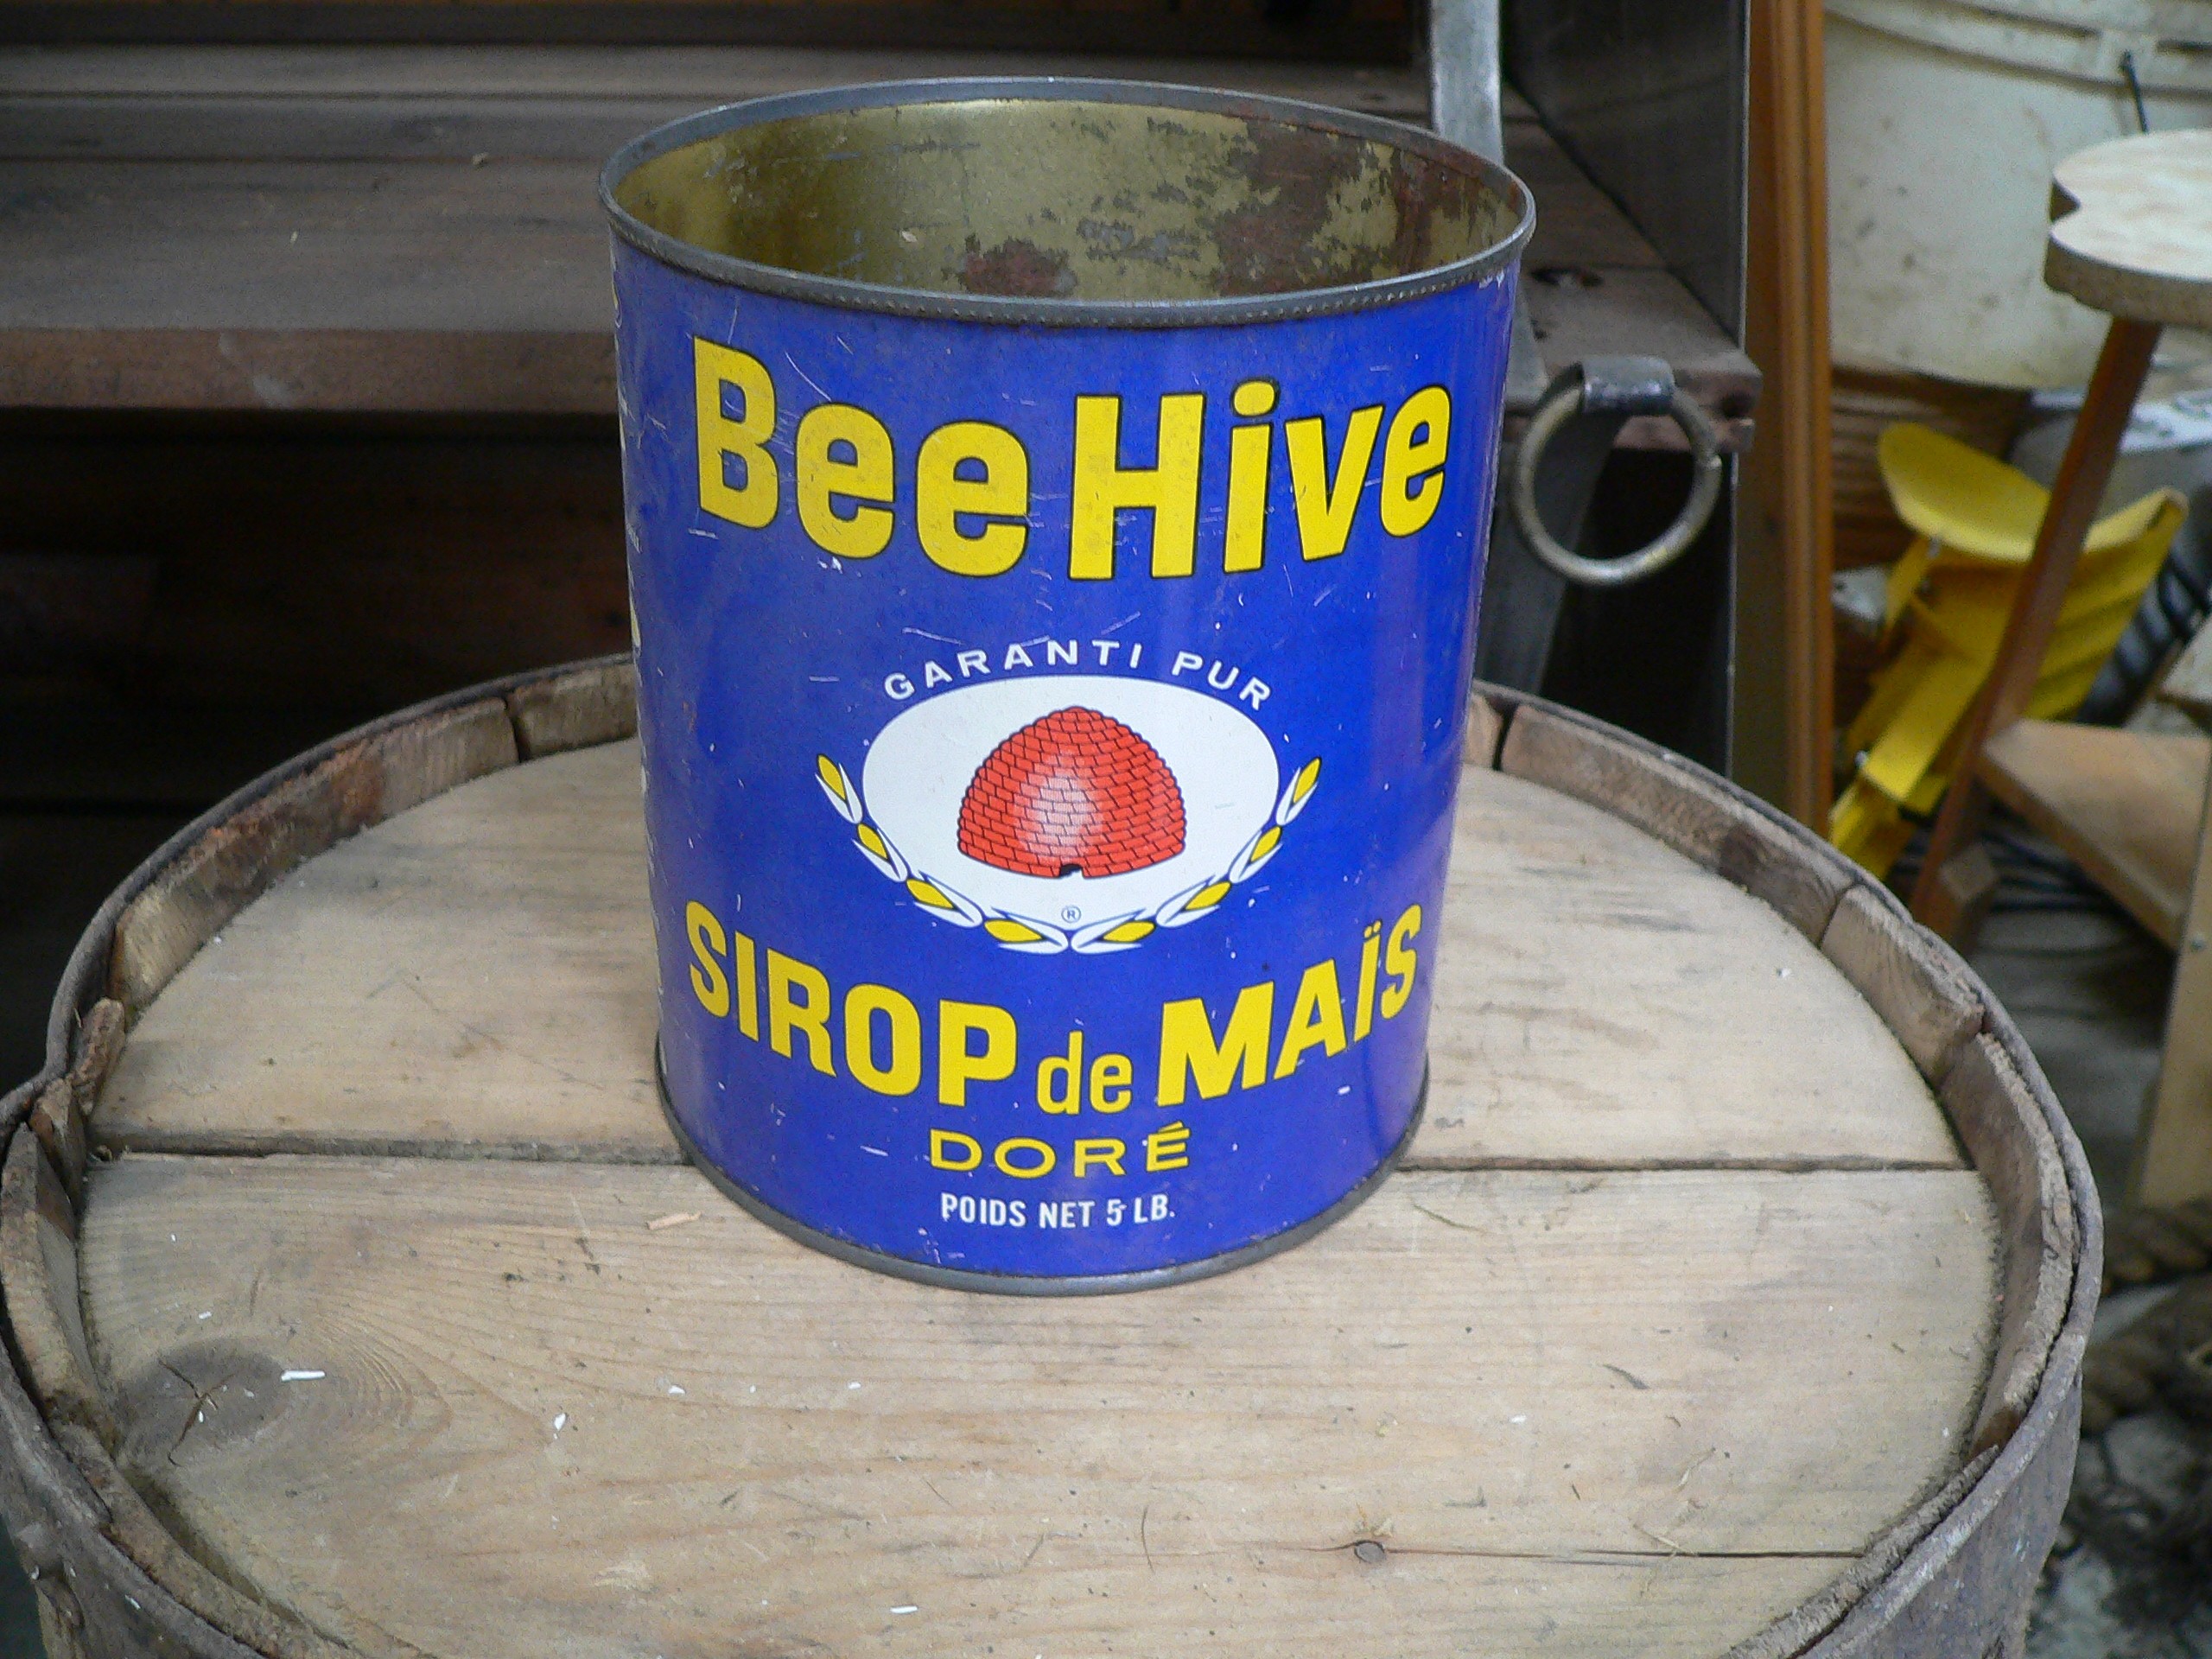 Canne de sirop de mais bee hive vintage # 7017.1